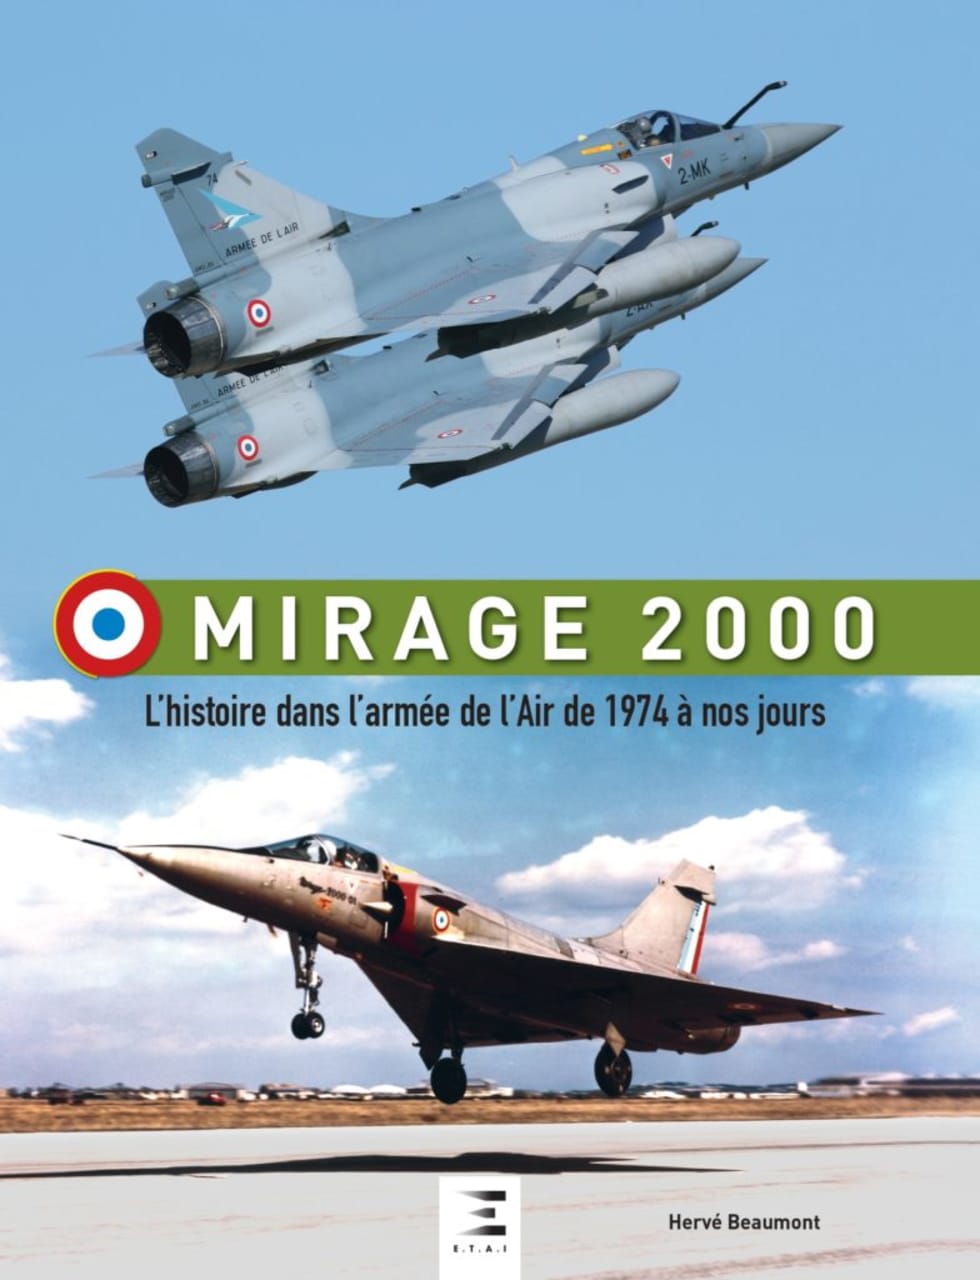 Couverture du livre "Mirage 2000"